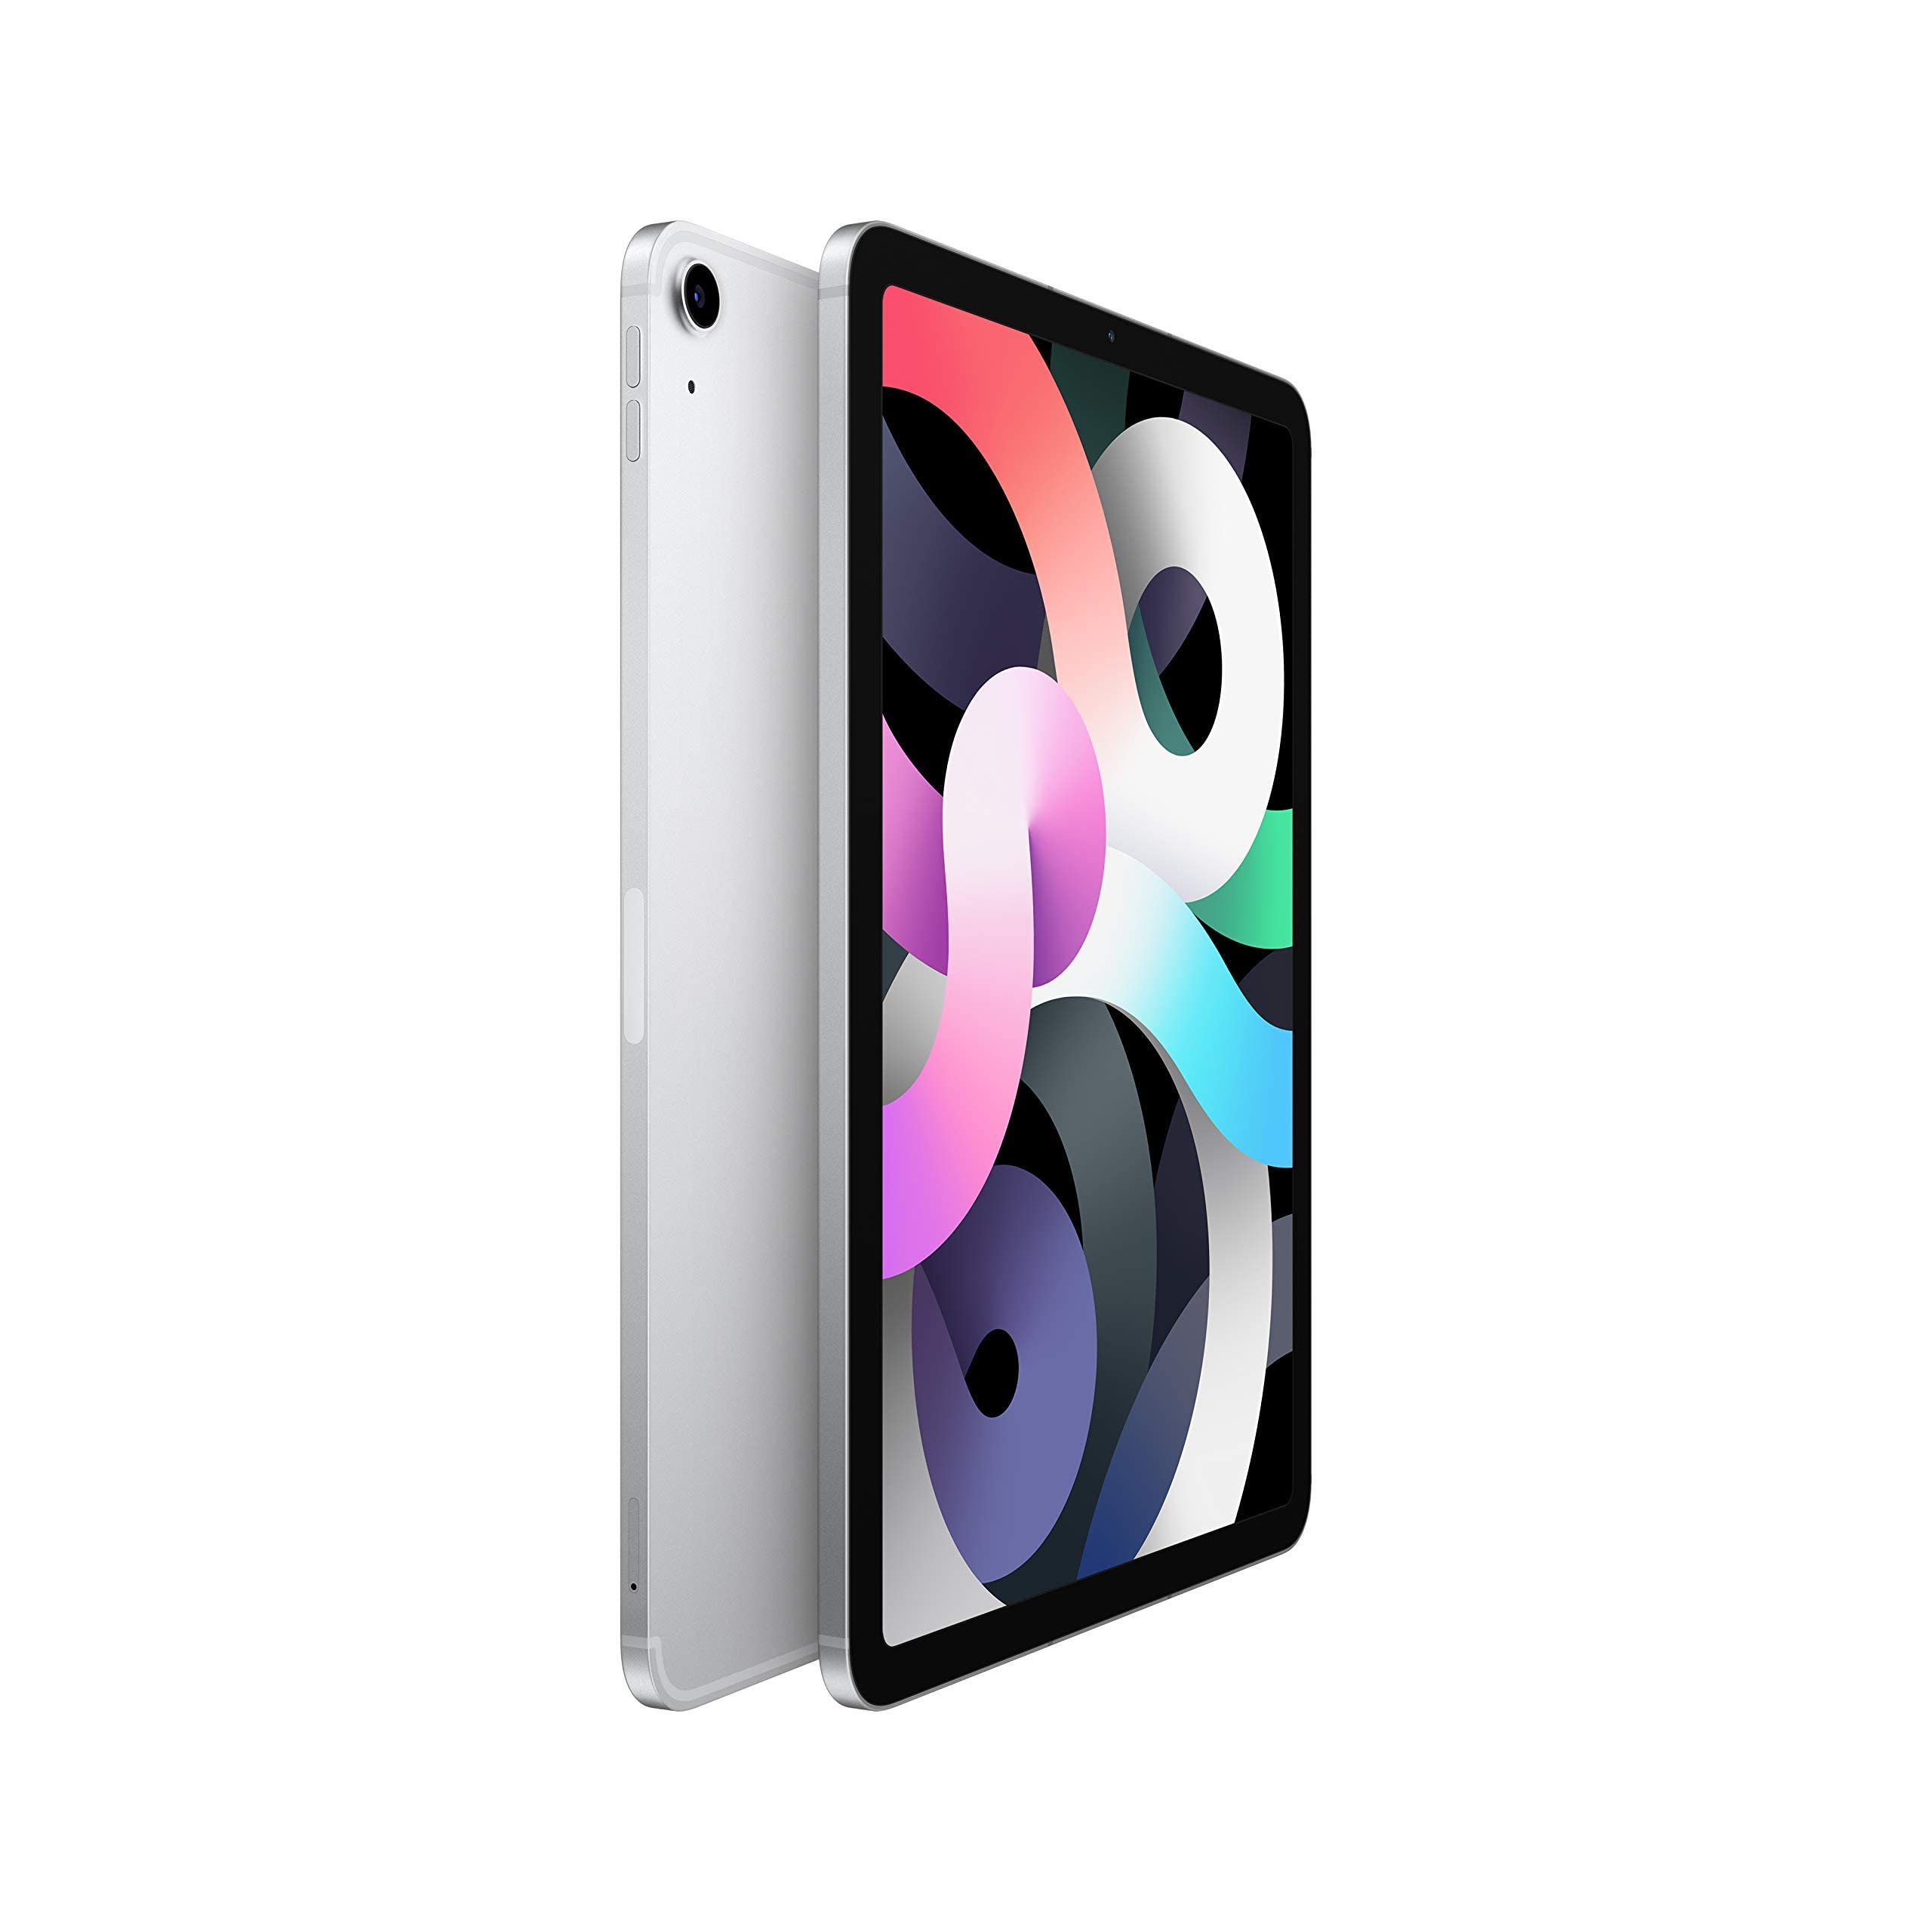 Apple iPad Air (10.9-inch, Wi-Fi + Cellular, 64GB) - Silver (Latest Model, 4th Generation) (Renewed)